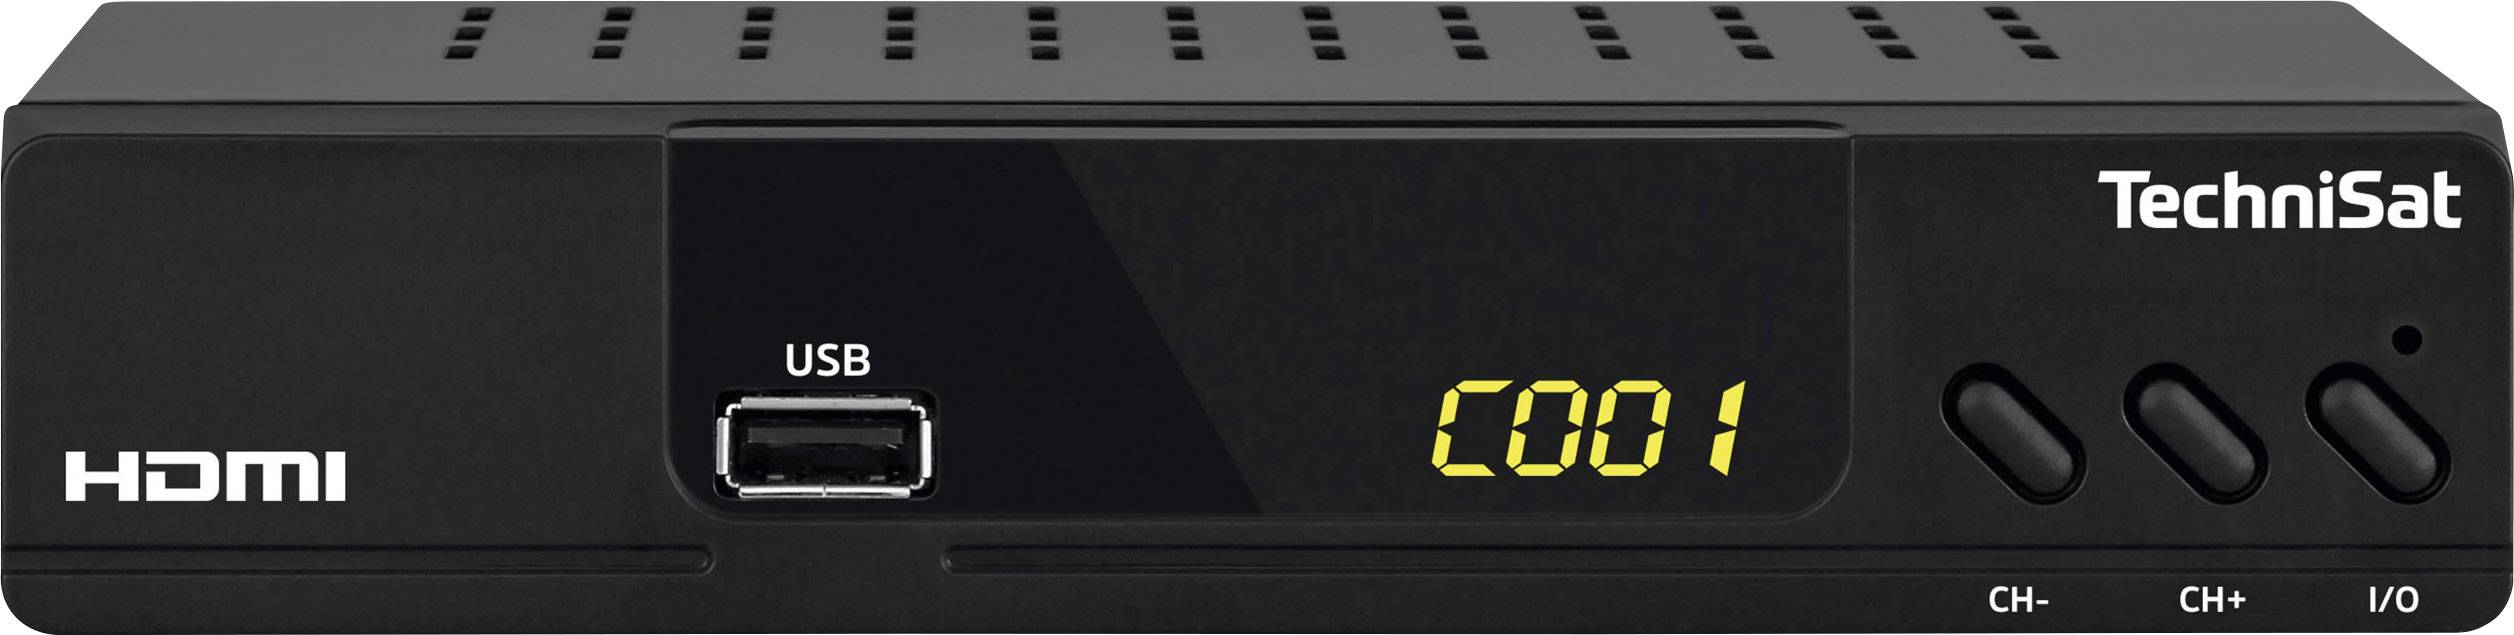 TECHNISAT HD-C 232 sw Receiver Kabel Digital FTA